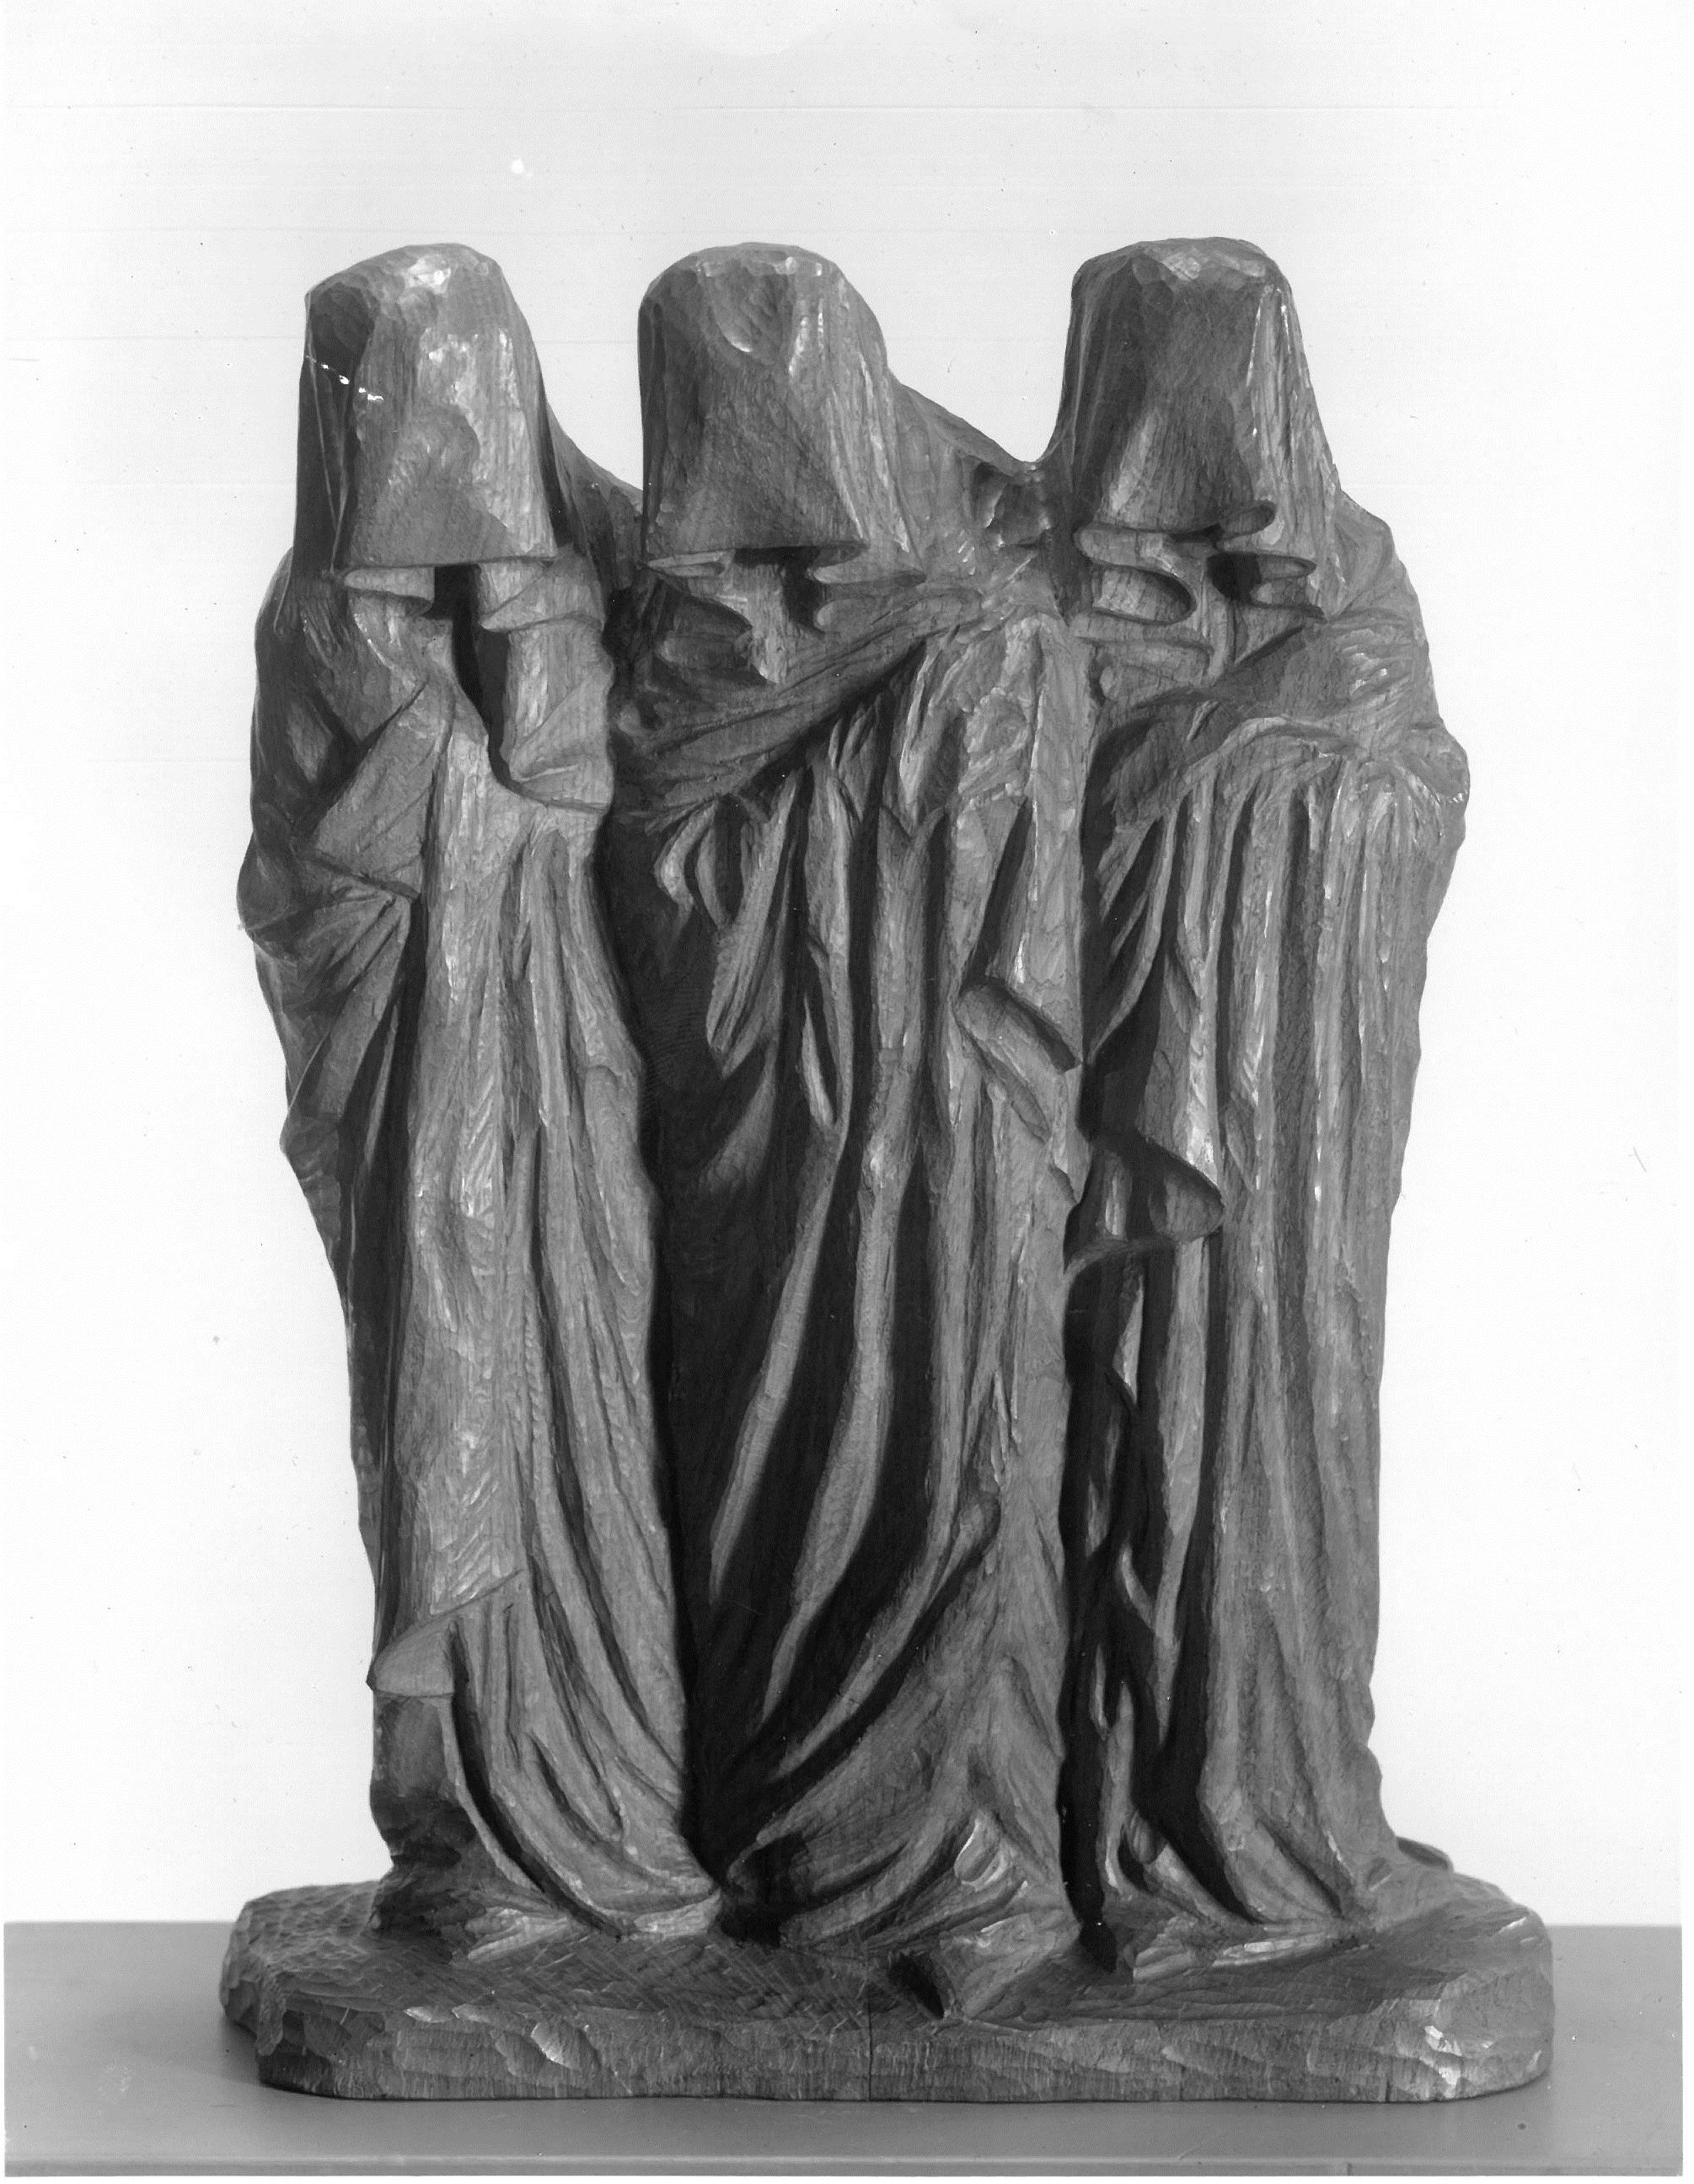 George Minne (1866 - 1941), Drei heilige Frauen (am Grabe) I, 1896, Hamburger Kunsthalle, erworben mit Mitteln der Campe’schen Historischen Kunststiftung, 1948